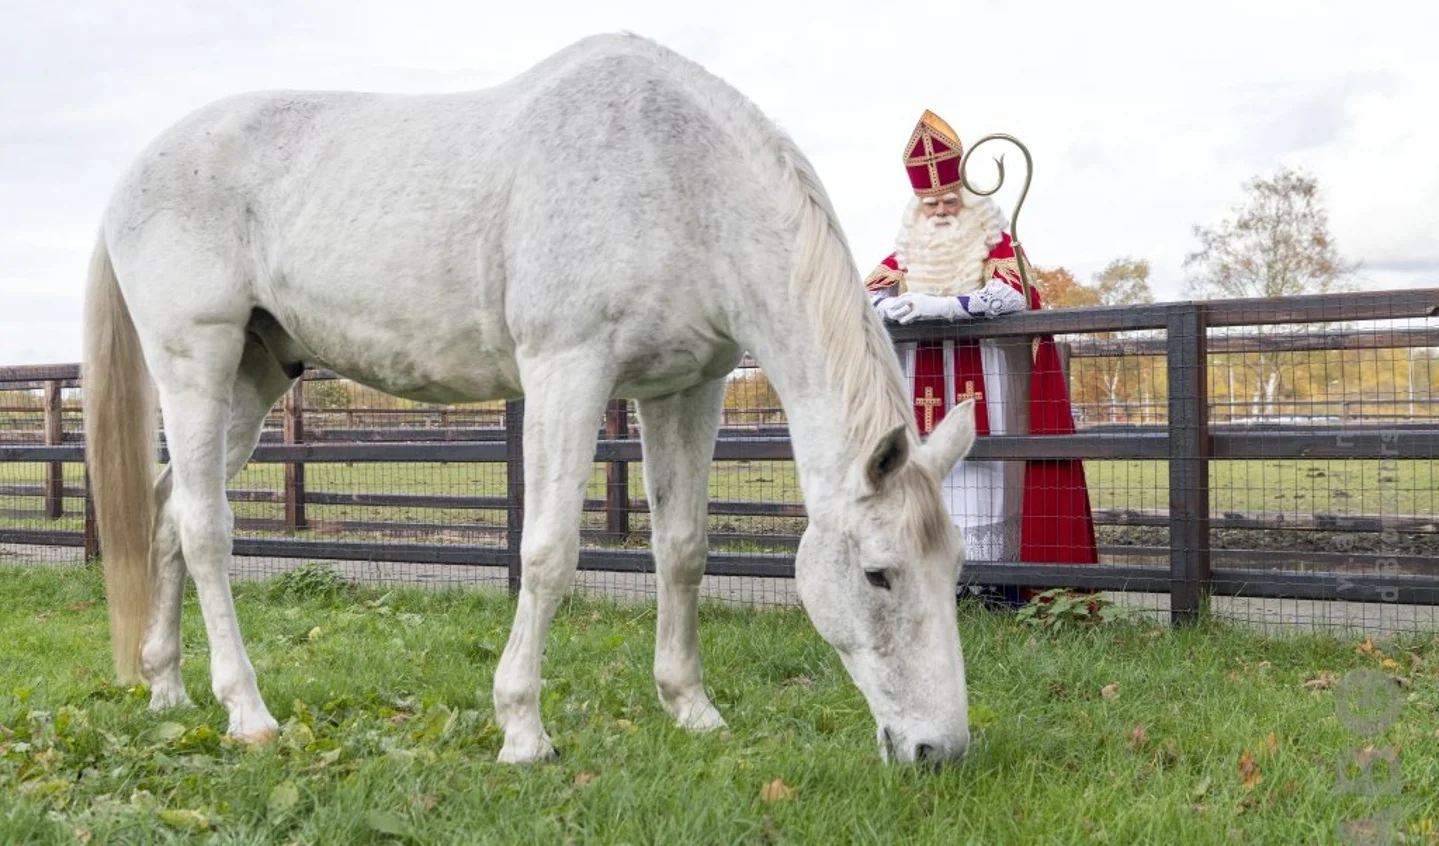 Lengtegraad Ook huurder De schimmel, het paard van Sinterklaas: “wit, witter, witst” | Het  onafhankelijke paarden(sport)medium